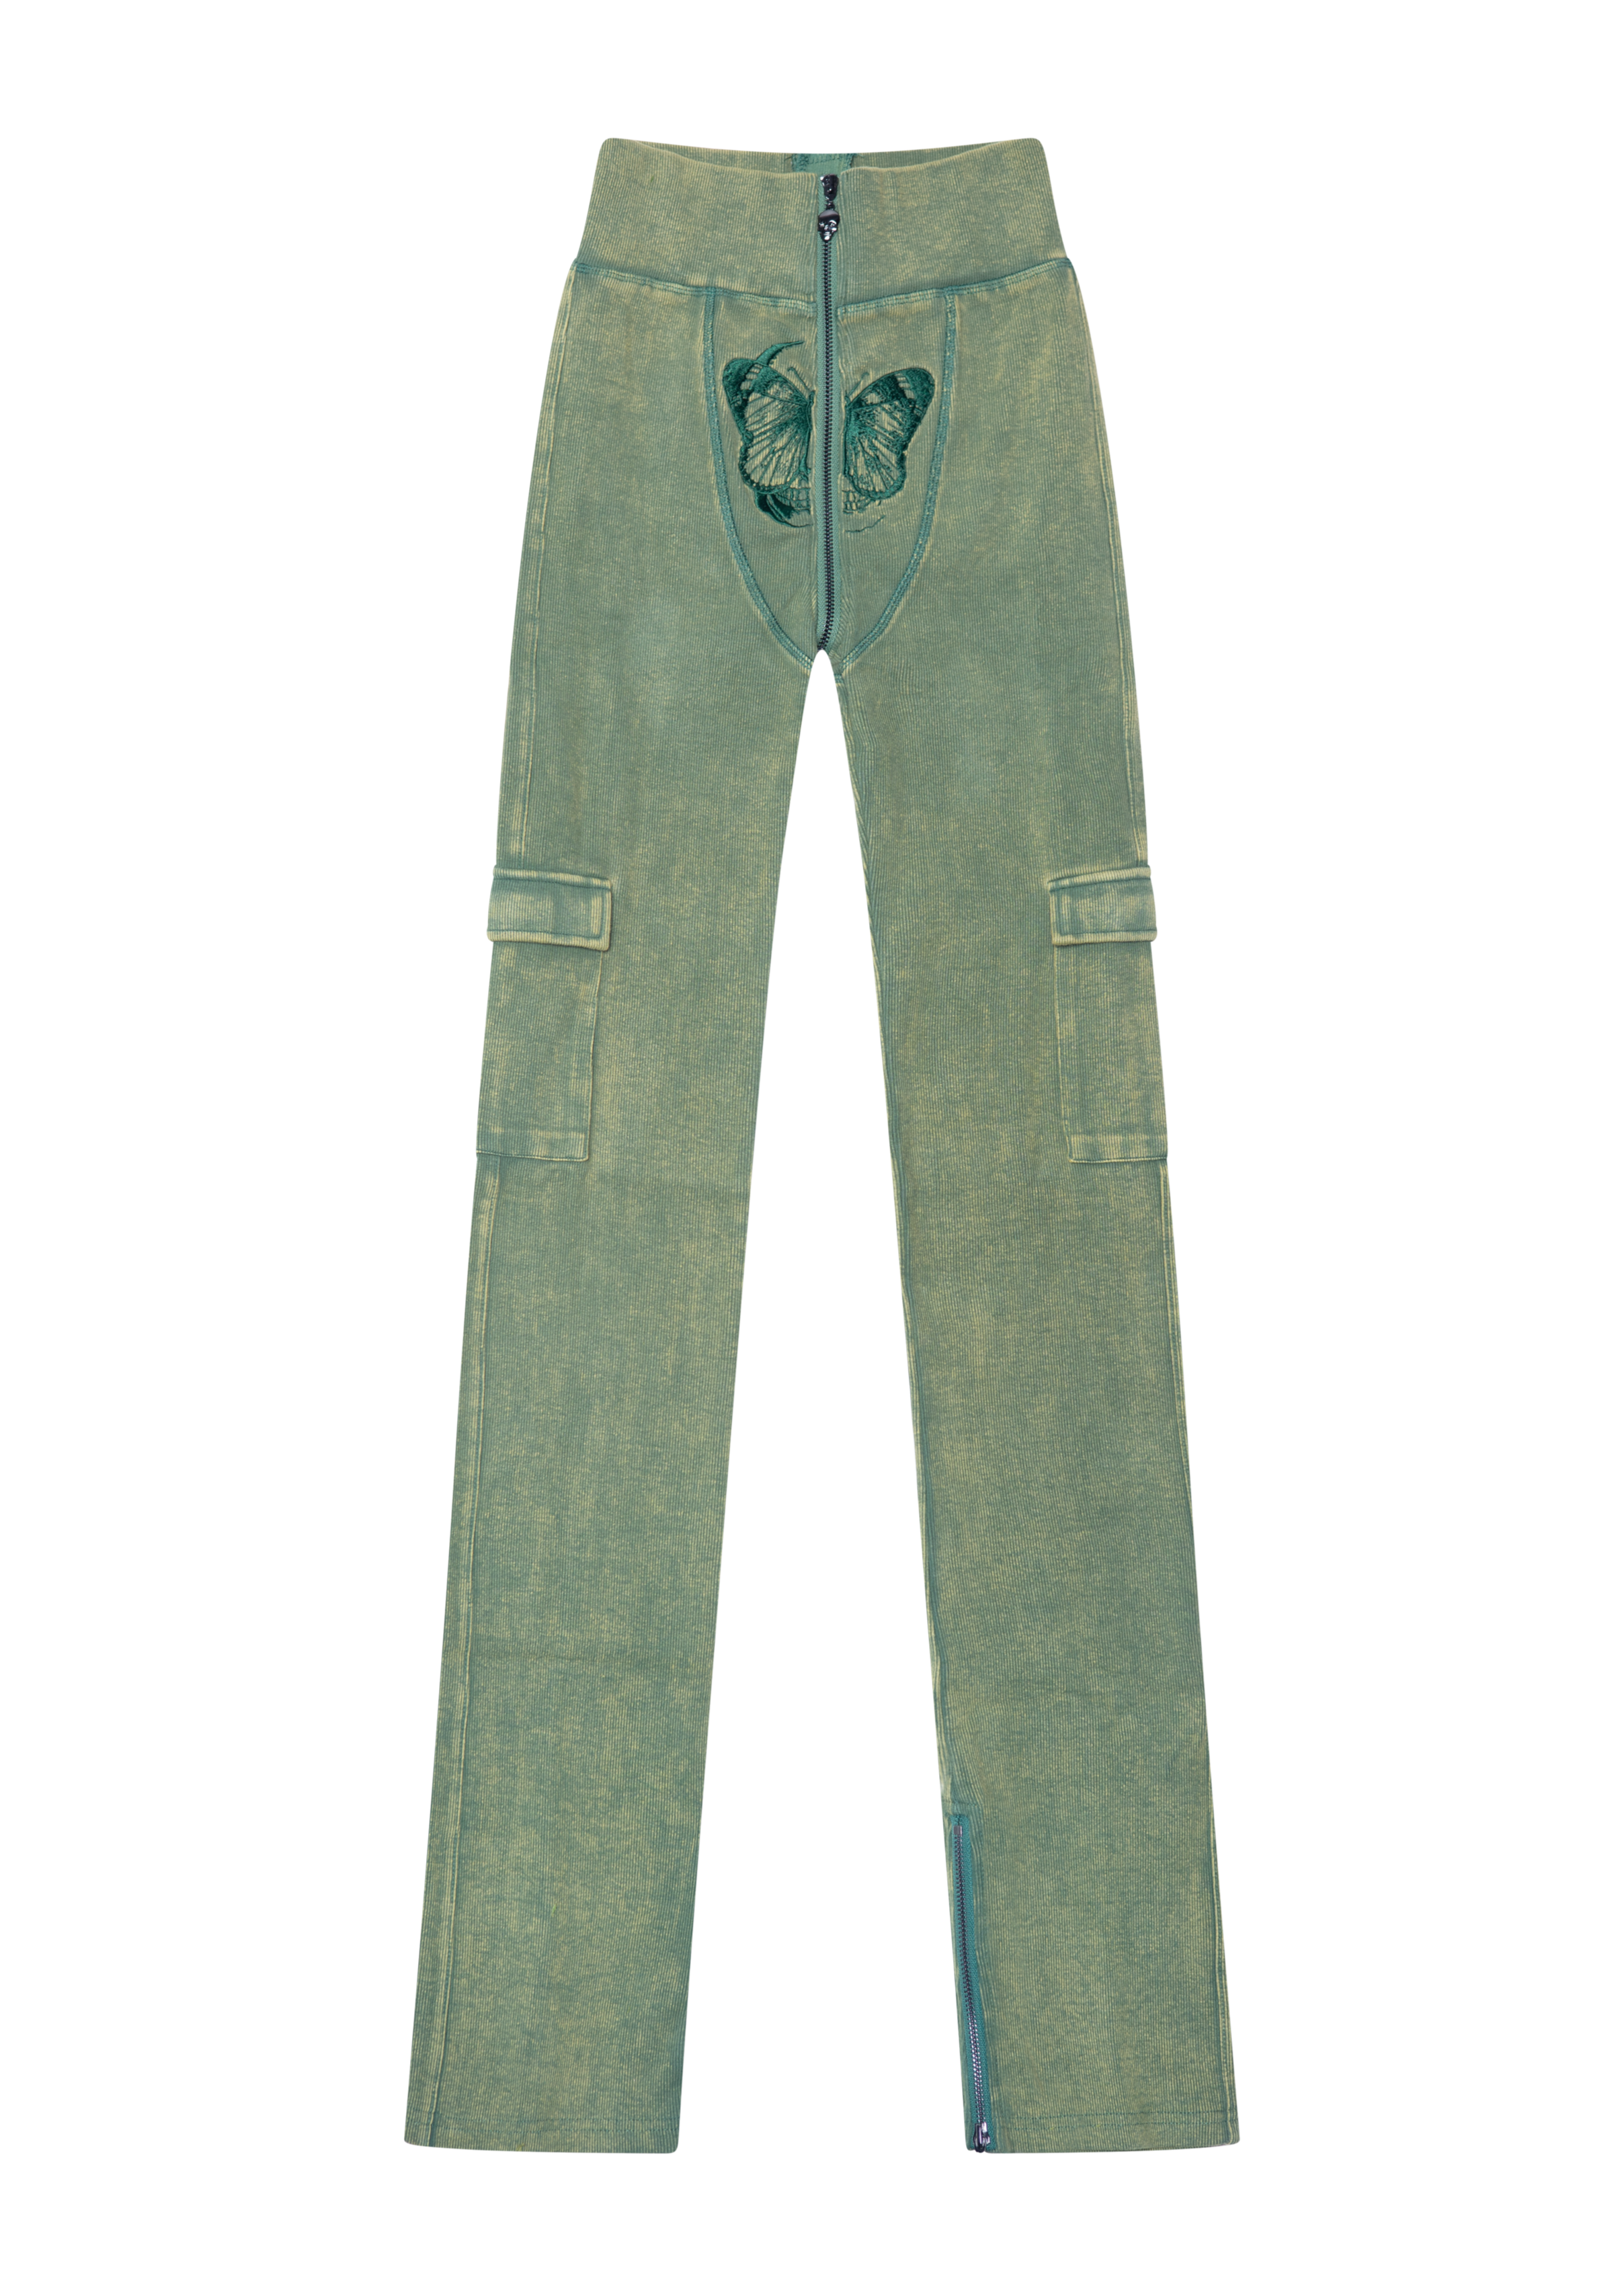 average pants in atlanta｜TikTok Search